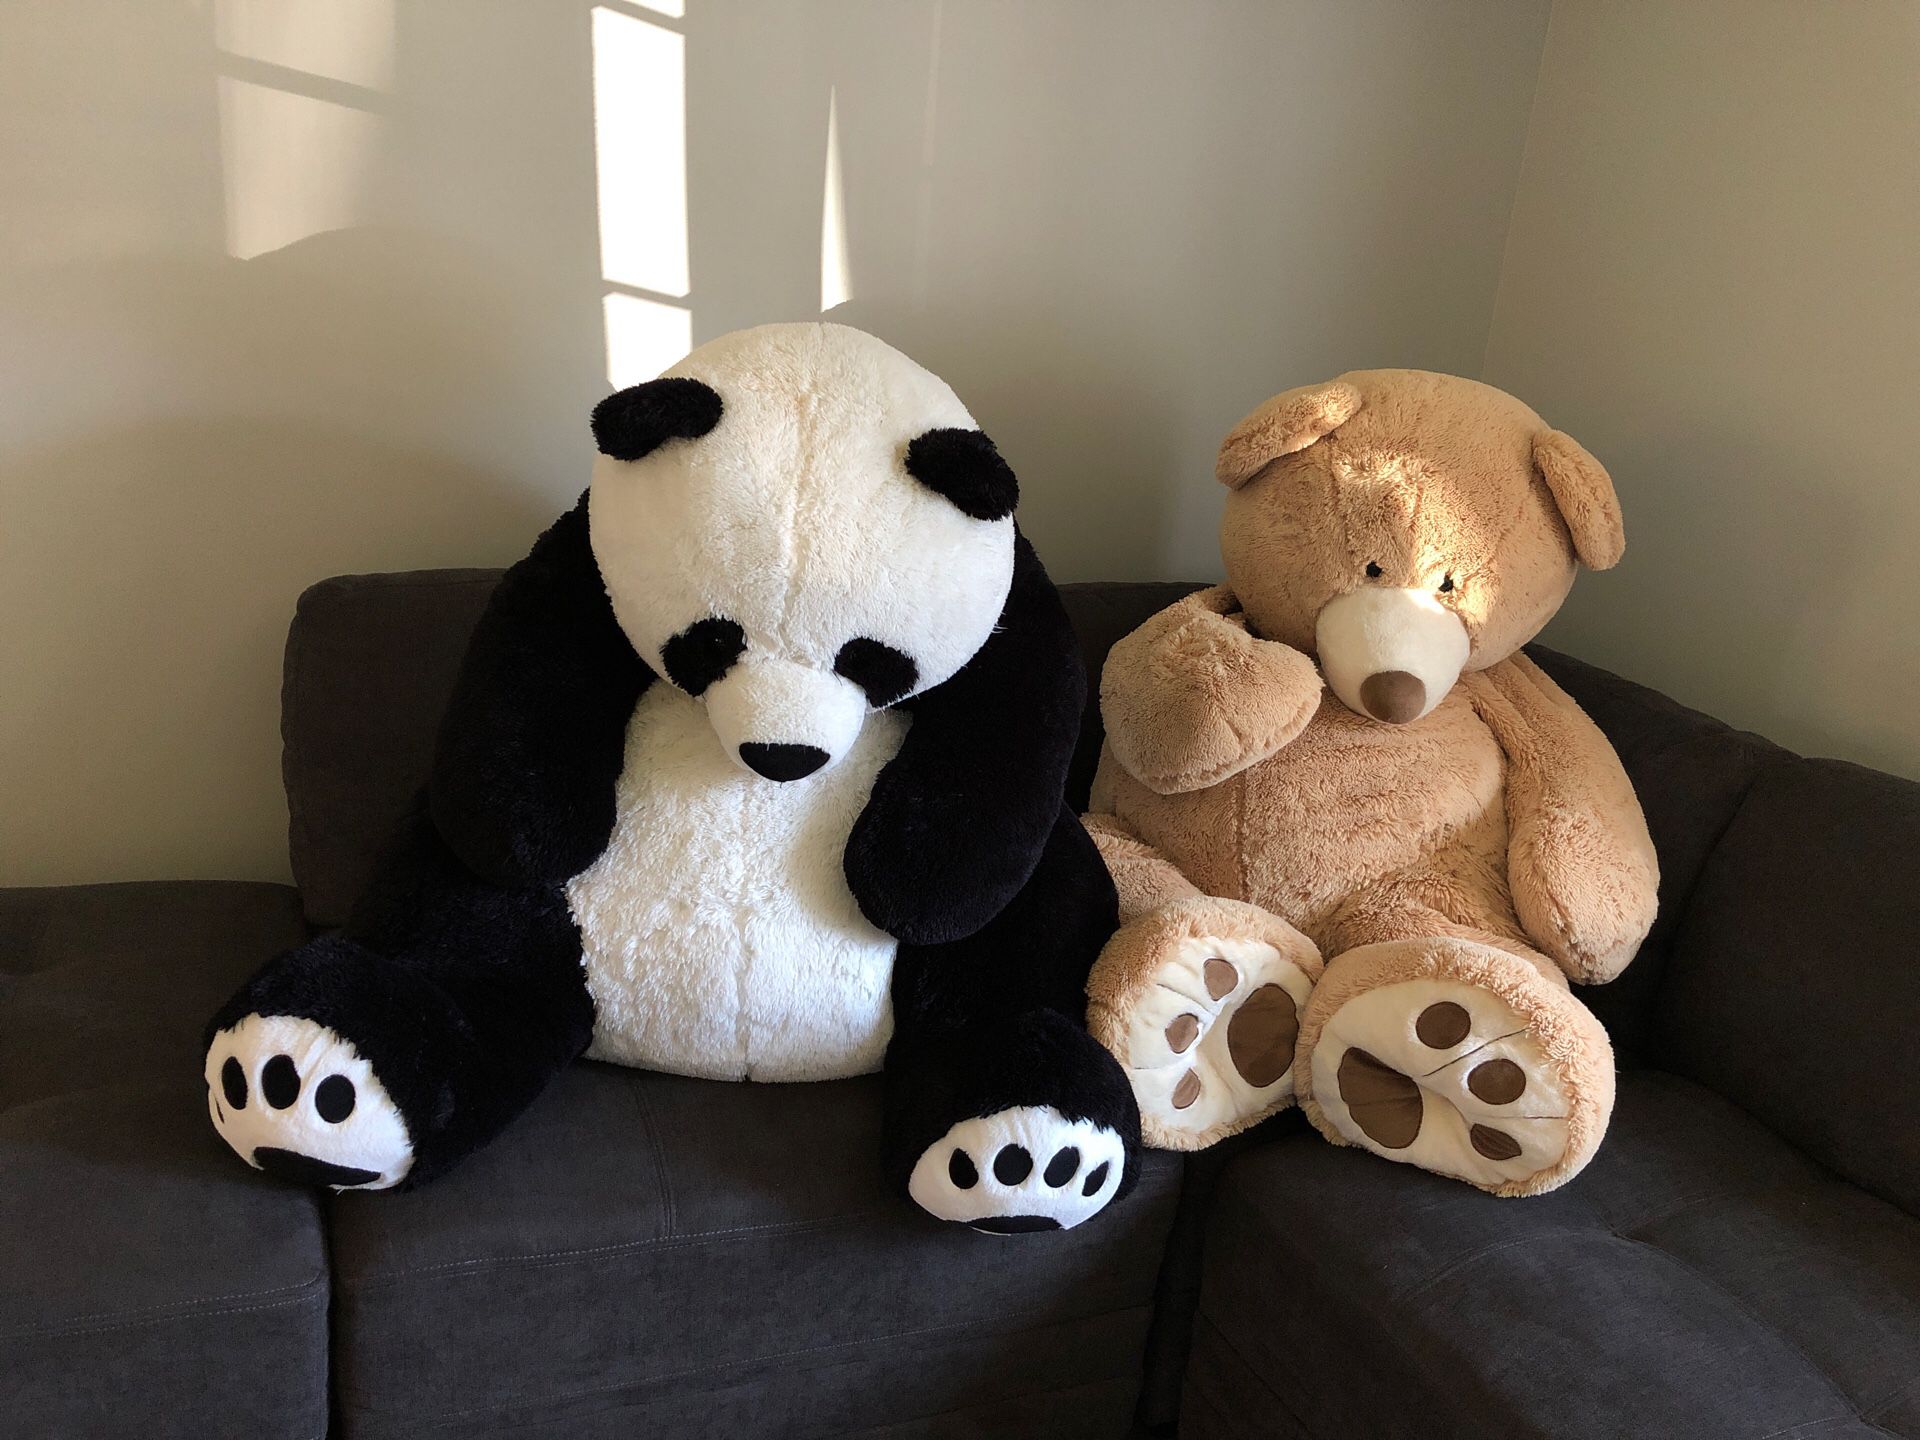 Panda & teddy bear plush life size/big animals